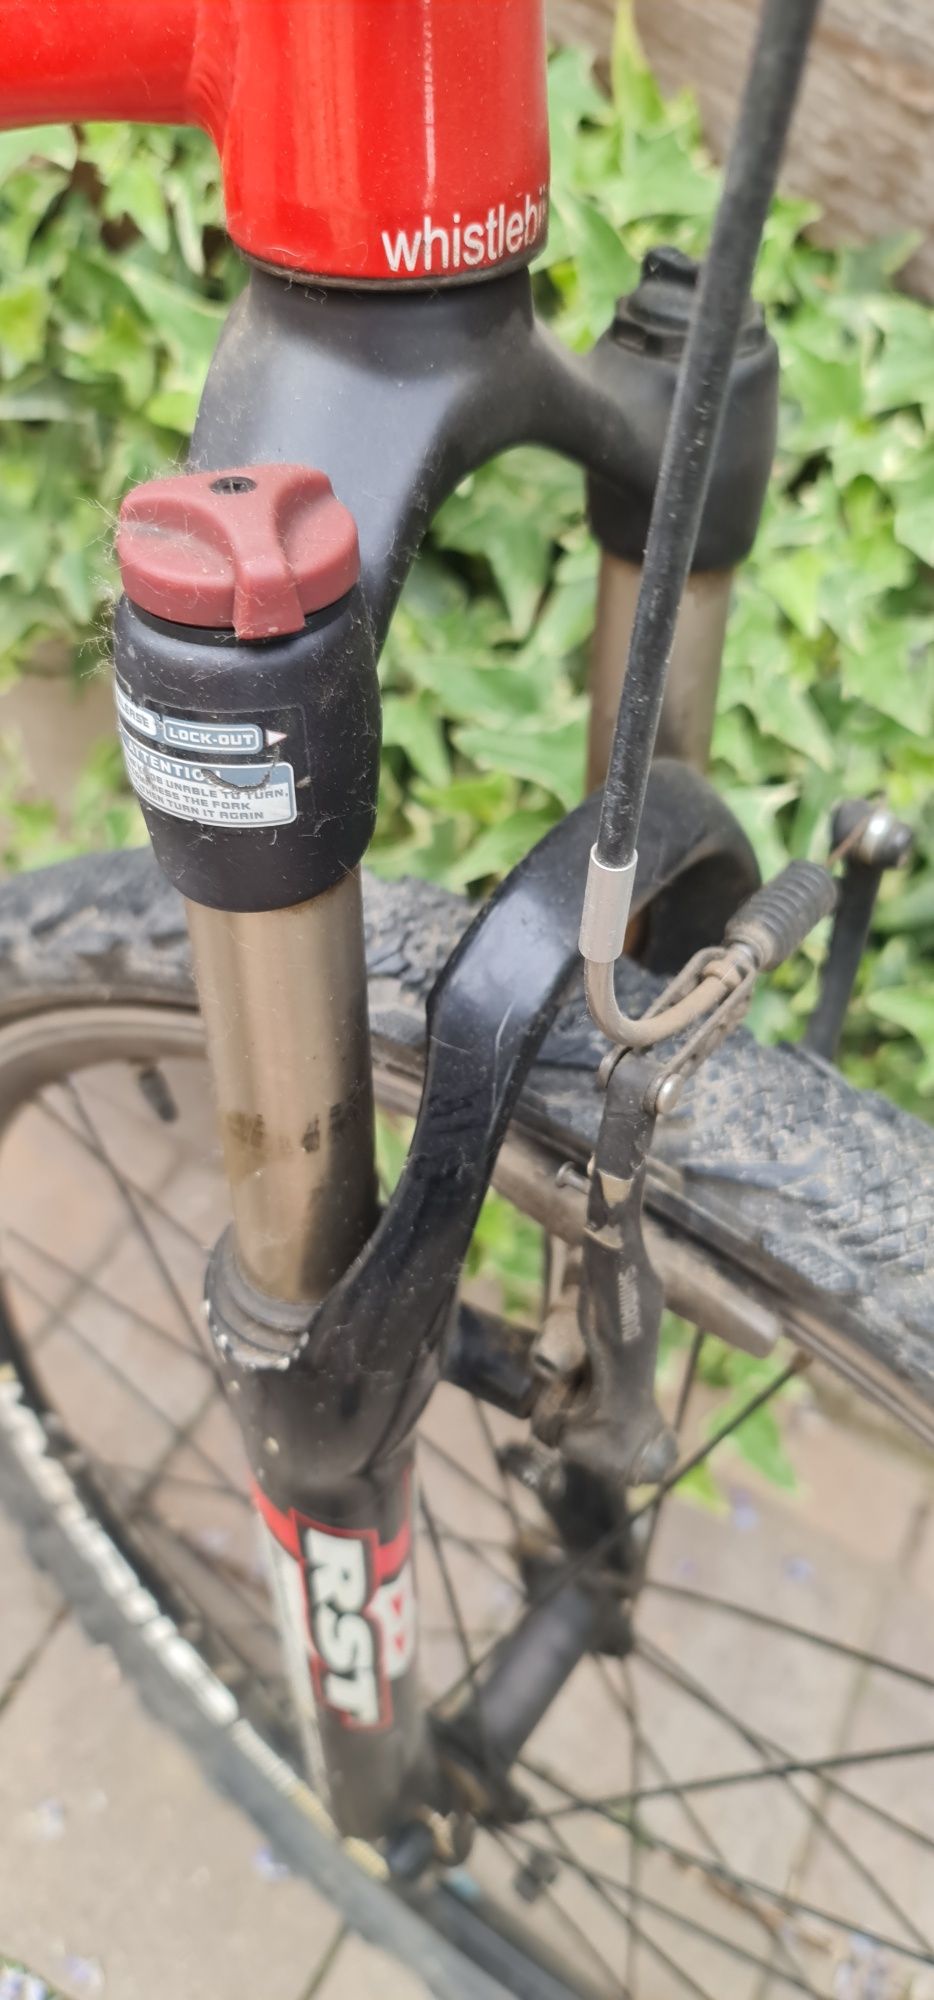 Bicicleta whistle w8900 miwok